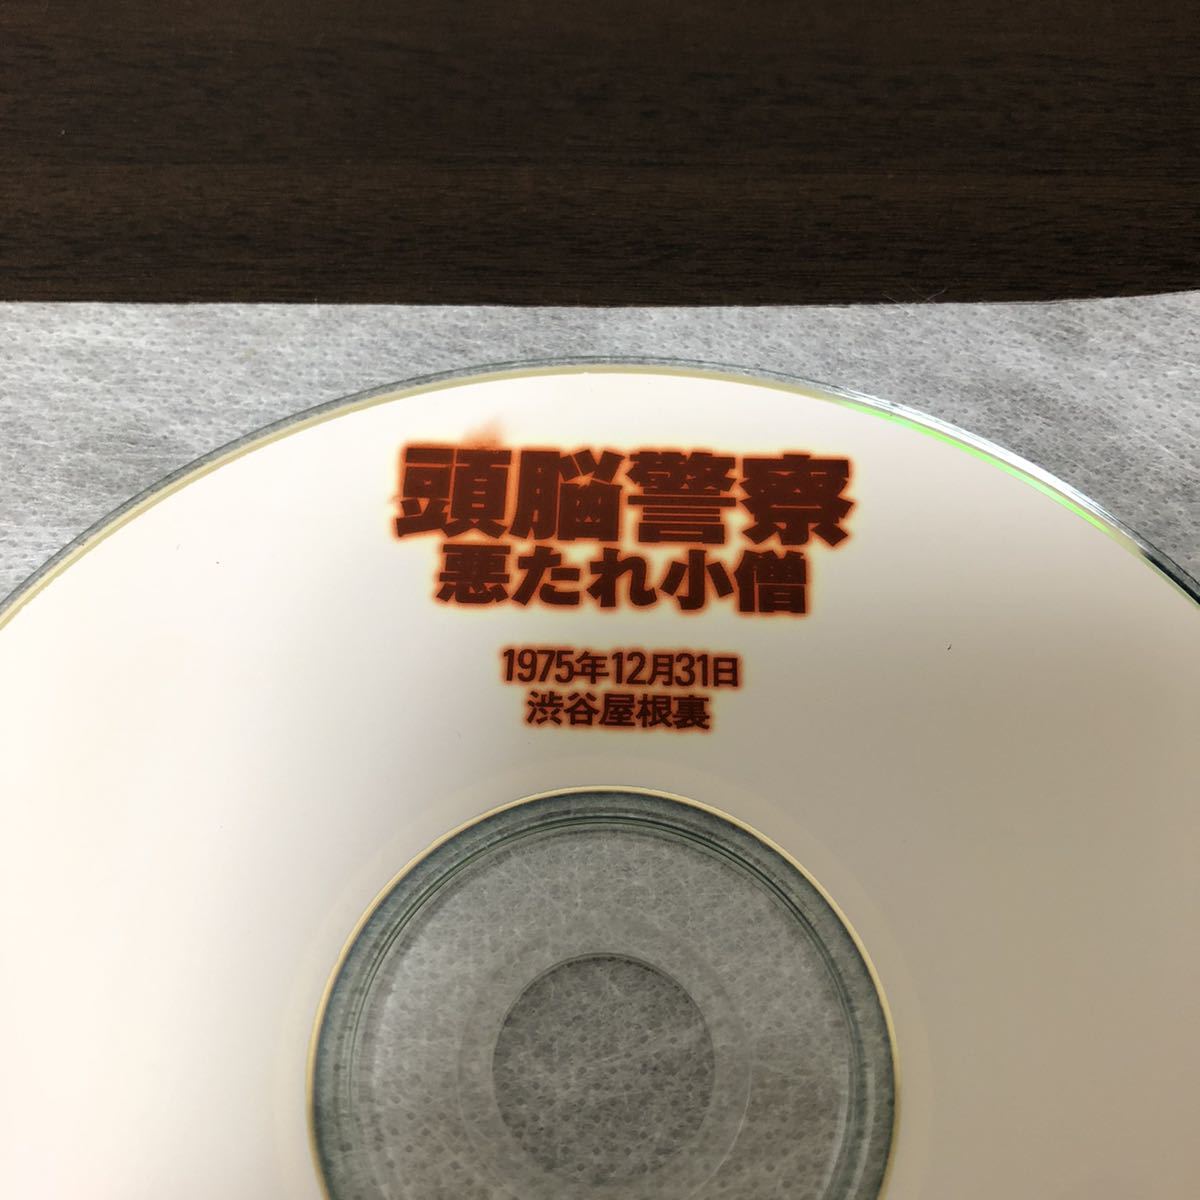 【非売品 CD】頭脳警察 / 悪たれ小僧 1975年12月31日 渋谷屋根裏 / PANTA パンタ_画像2